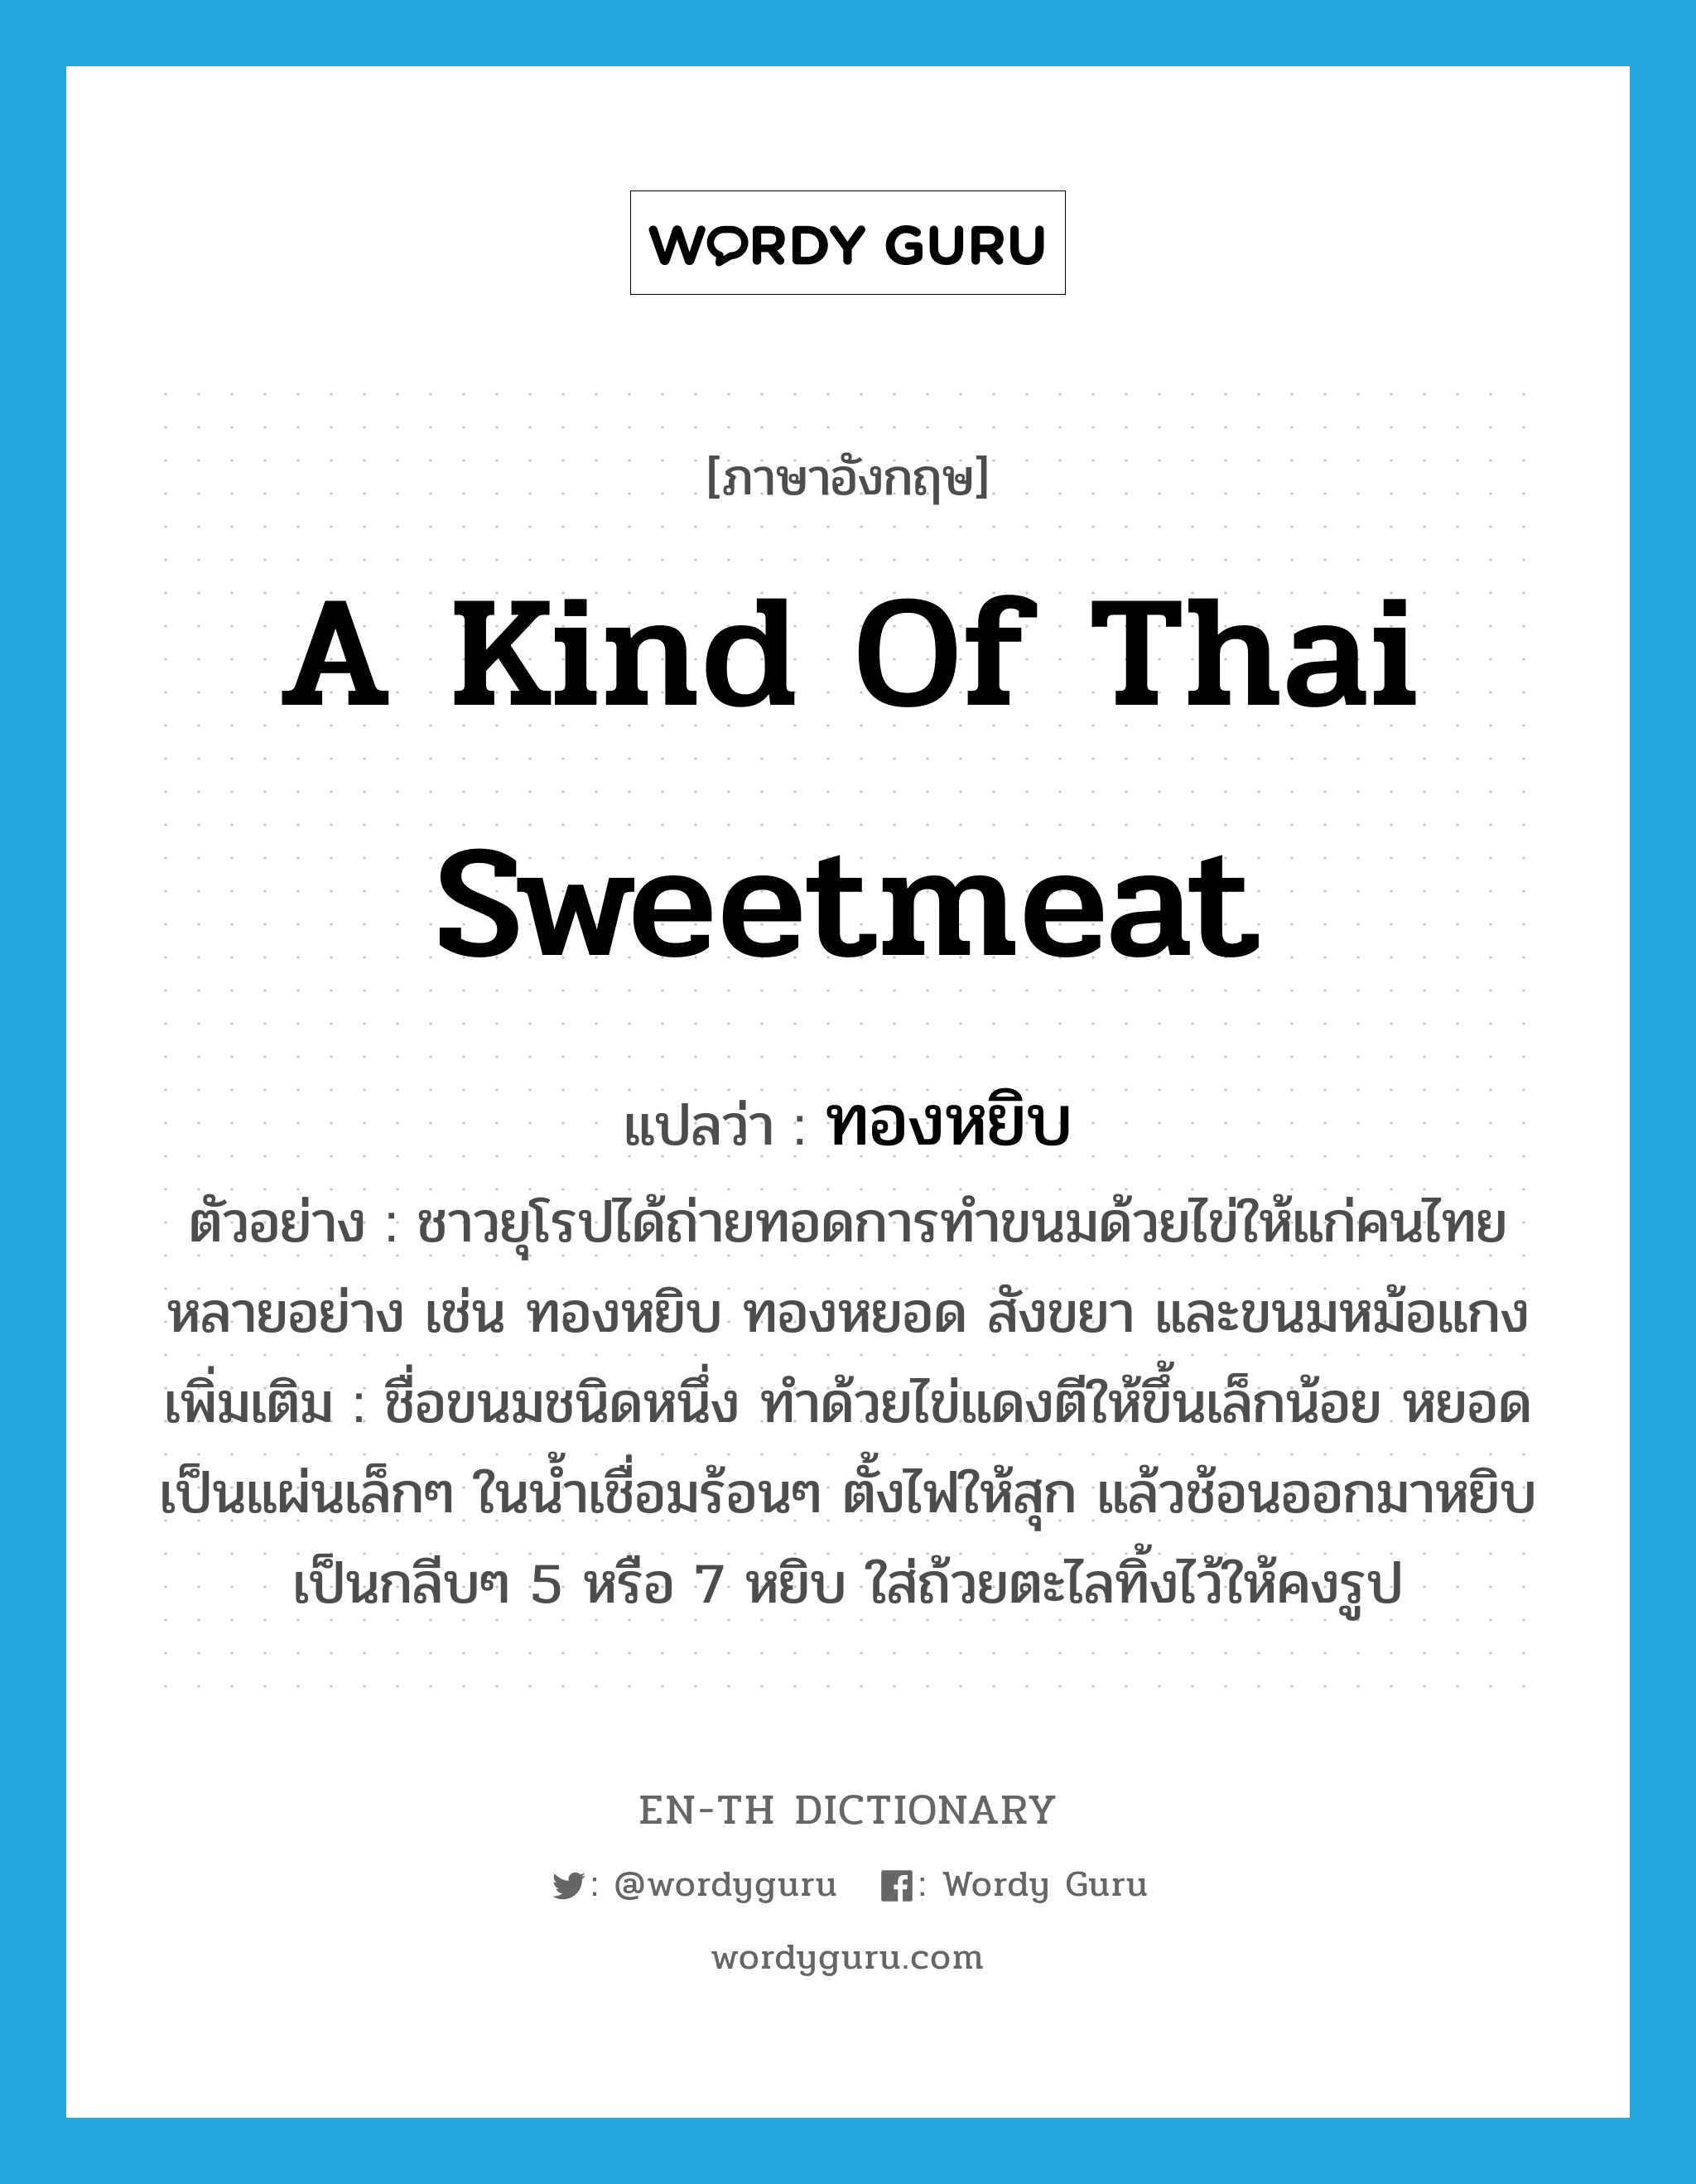 a kind of Thai sweetmeat แปลว่า?, คำศัพท์ภาษาอังกฤษ a kind of Thai sweetmeat แปลว่า ทองหยิบ ประเภท N ตัวอย่าง ชาวยุโรปได้ถ่ายทอดการทำขนมด้วยไข่ให้แก่คนไทยหลายอย่าง เช่น ทองหยิบ ทองหยอด สังขยา และขนมหม้อแกง เพิ่มเติม ชื่อขนมชนิดหนึ่ง ทำด้วยไข่แดงตีให้ขึ้นเล็กน้อย หยอดเป็นแผ่นเล็กๆ ในน้ำเชื่อมร้อนๆ ตั้งไฟให้สุก แล้วช้อนออกมาหยิบเป็นกลีบๆ 5 หรือ 7 หยิบ ใส่ถ้วยตะไลทิ้งไว้ให้คงรูป หมวด N